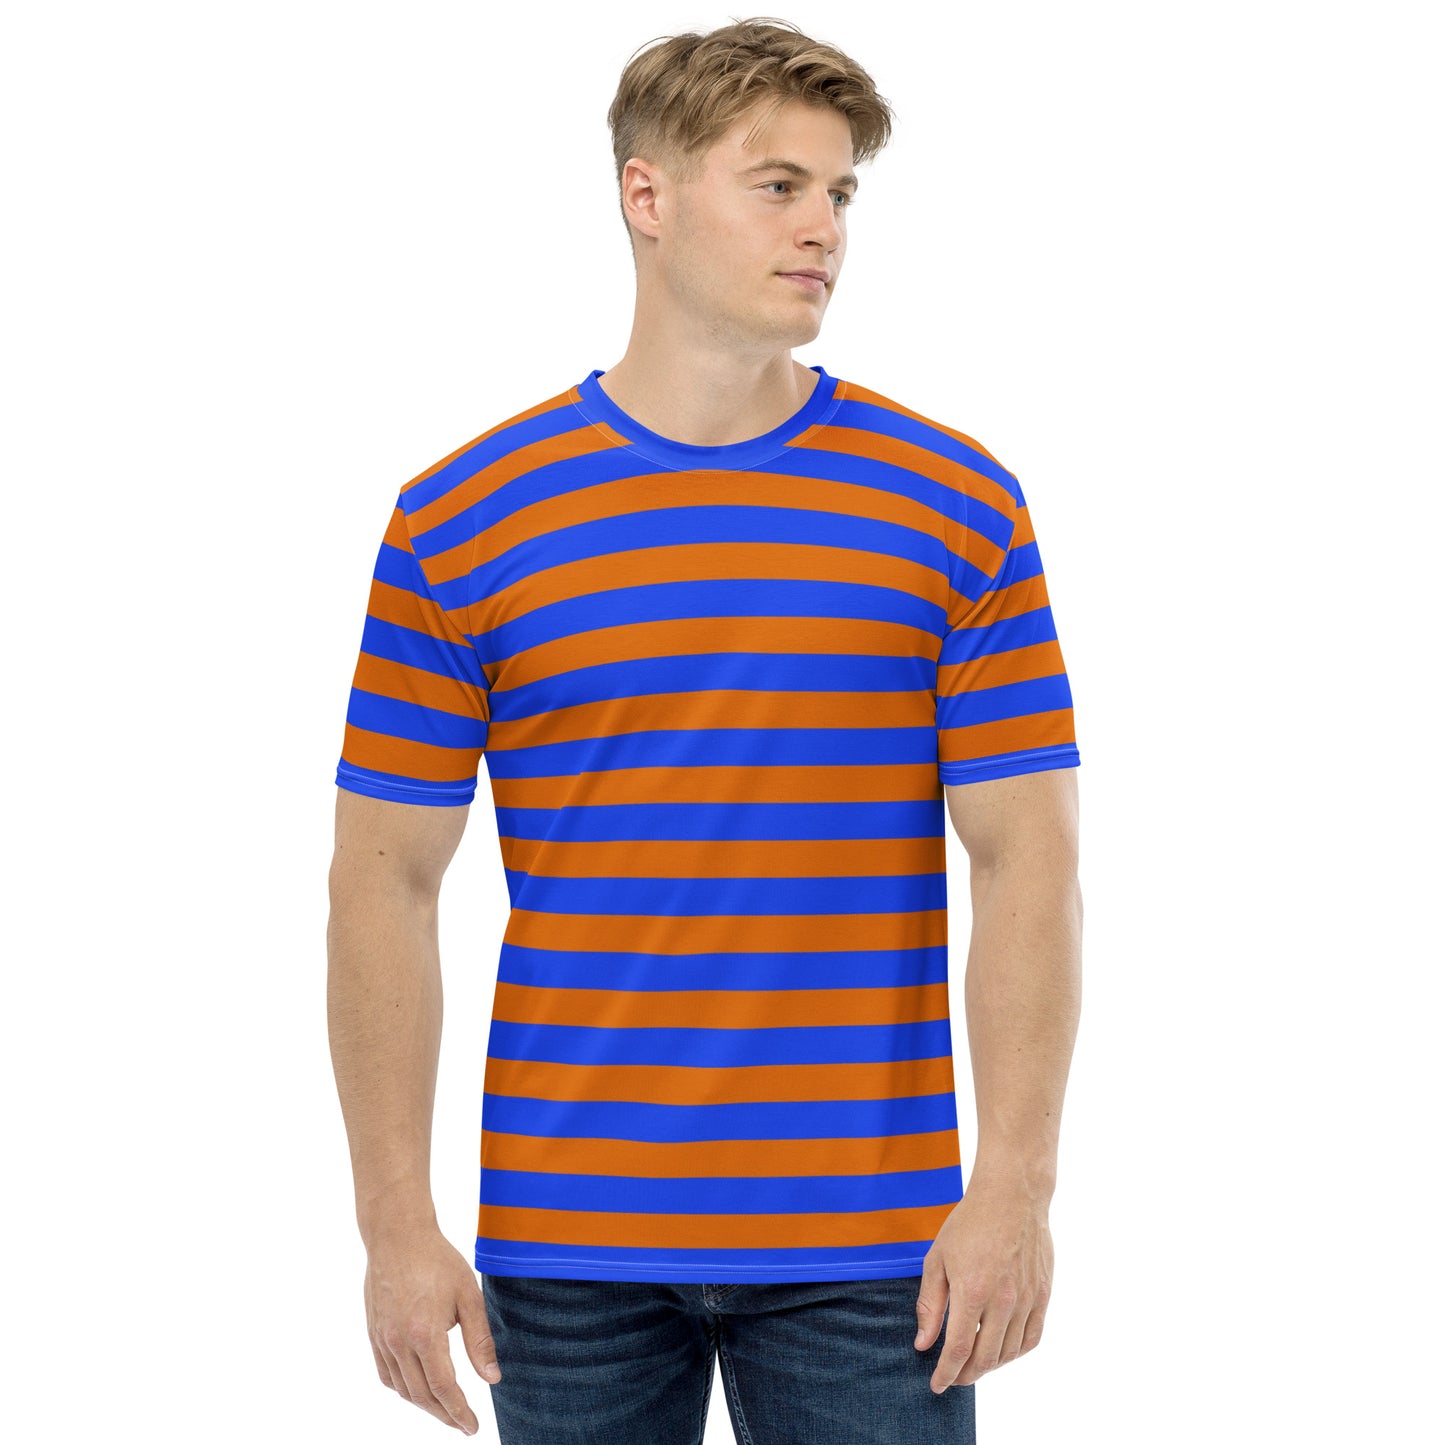 Vintage blue and orange striped men's T-shirt